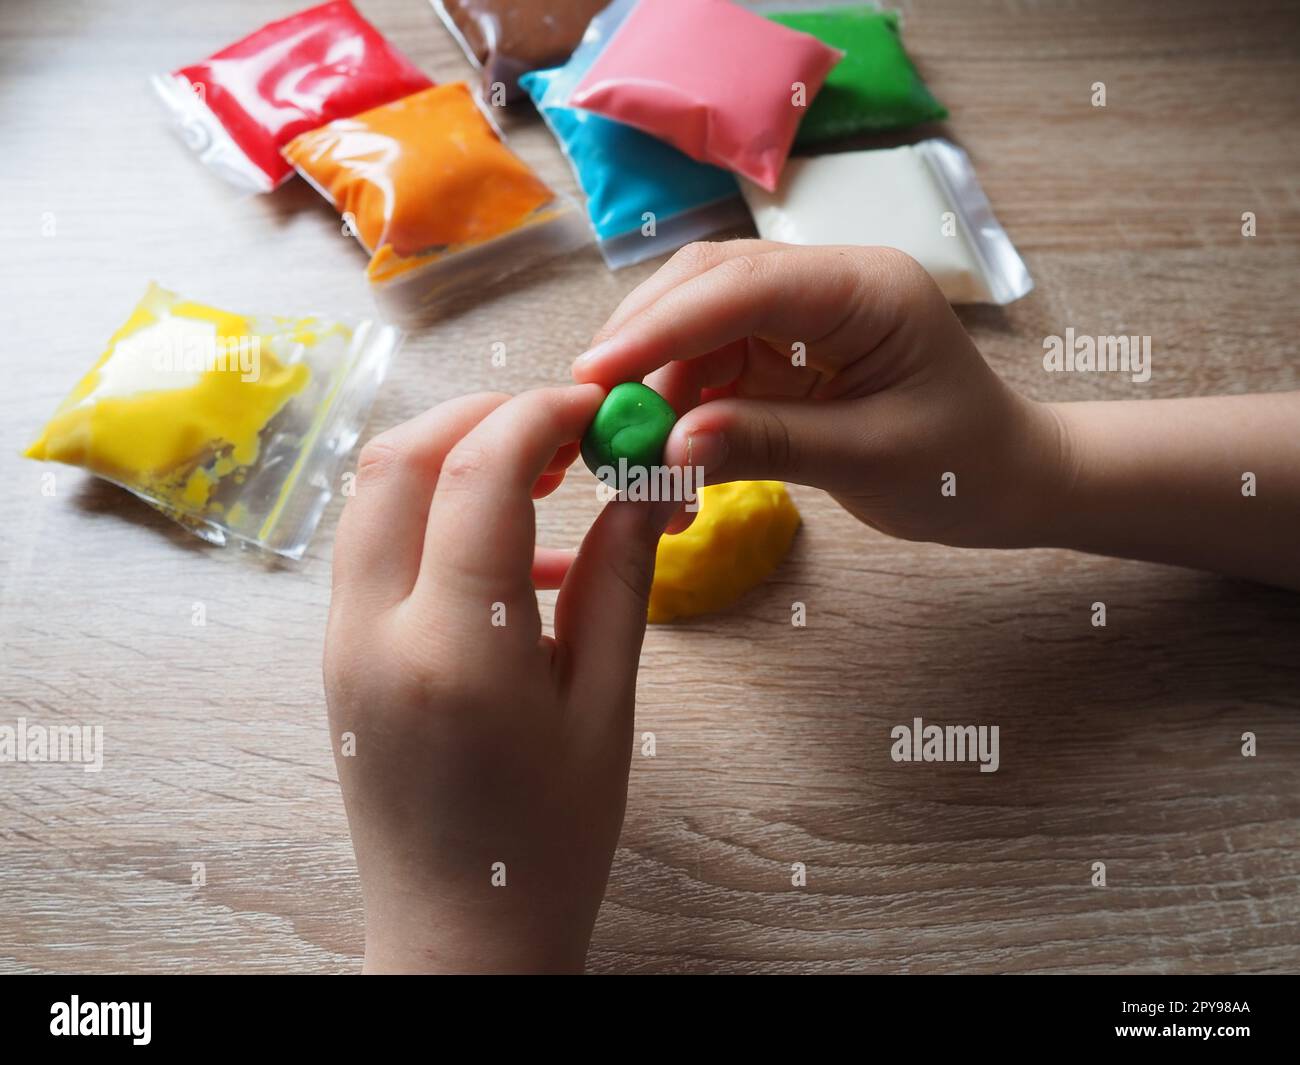 Kinderhände zerknittern weiches Plastikin. Packungen mit Plastin liegen auf dem Tisch. Kreativität zur Entwicklung der Feinmotorik der Hände. Erstellen einer Gussform oder eines Modells aus Plasticine Stockfoto